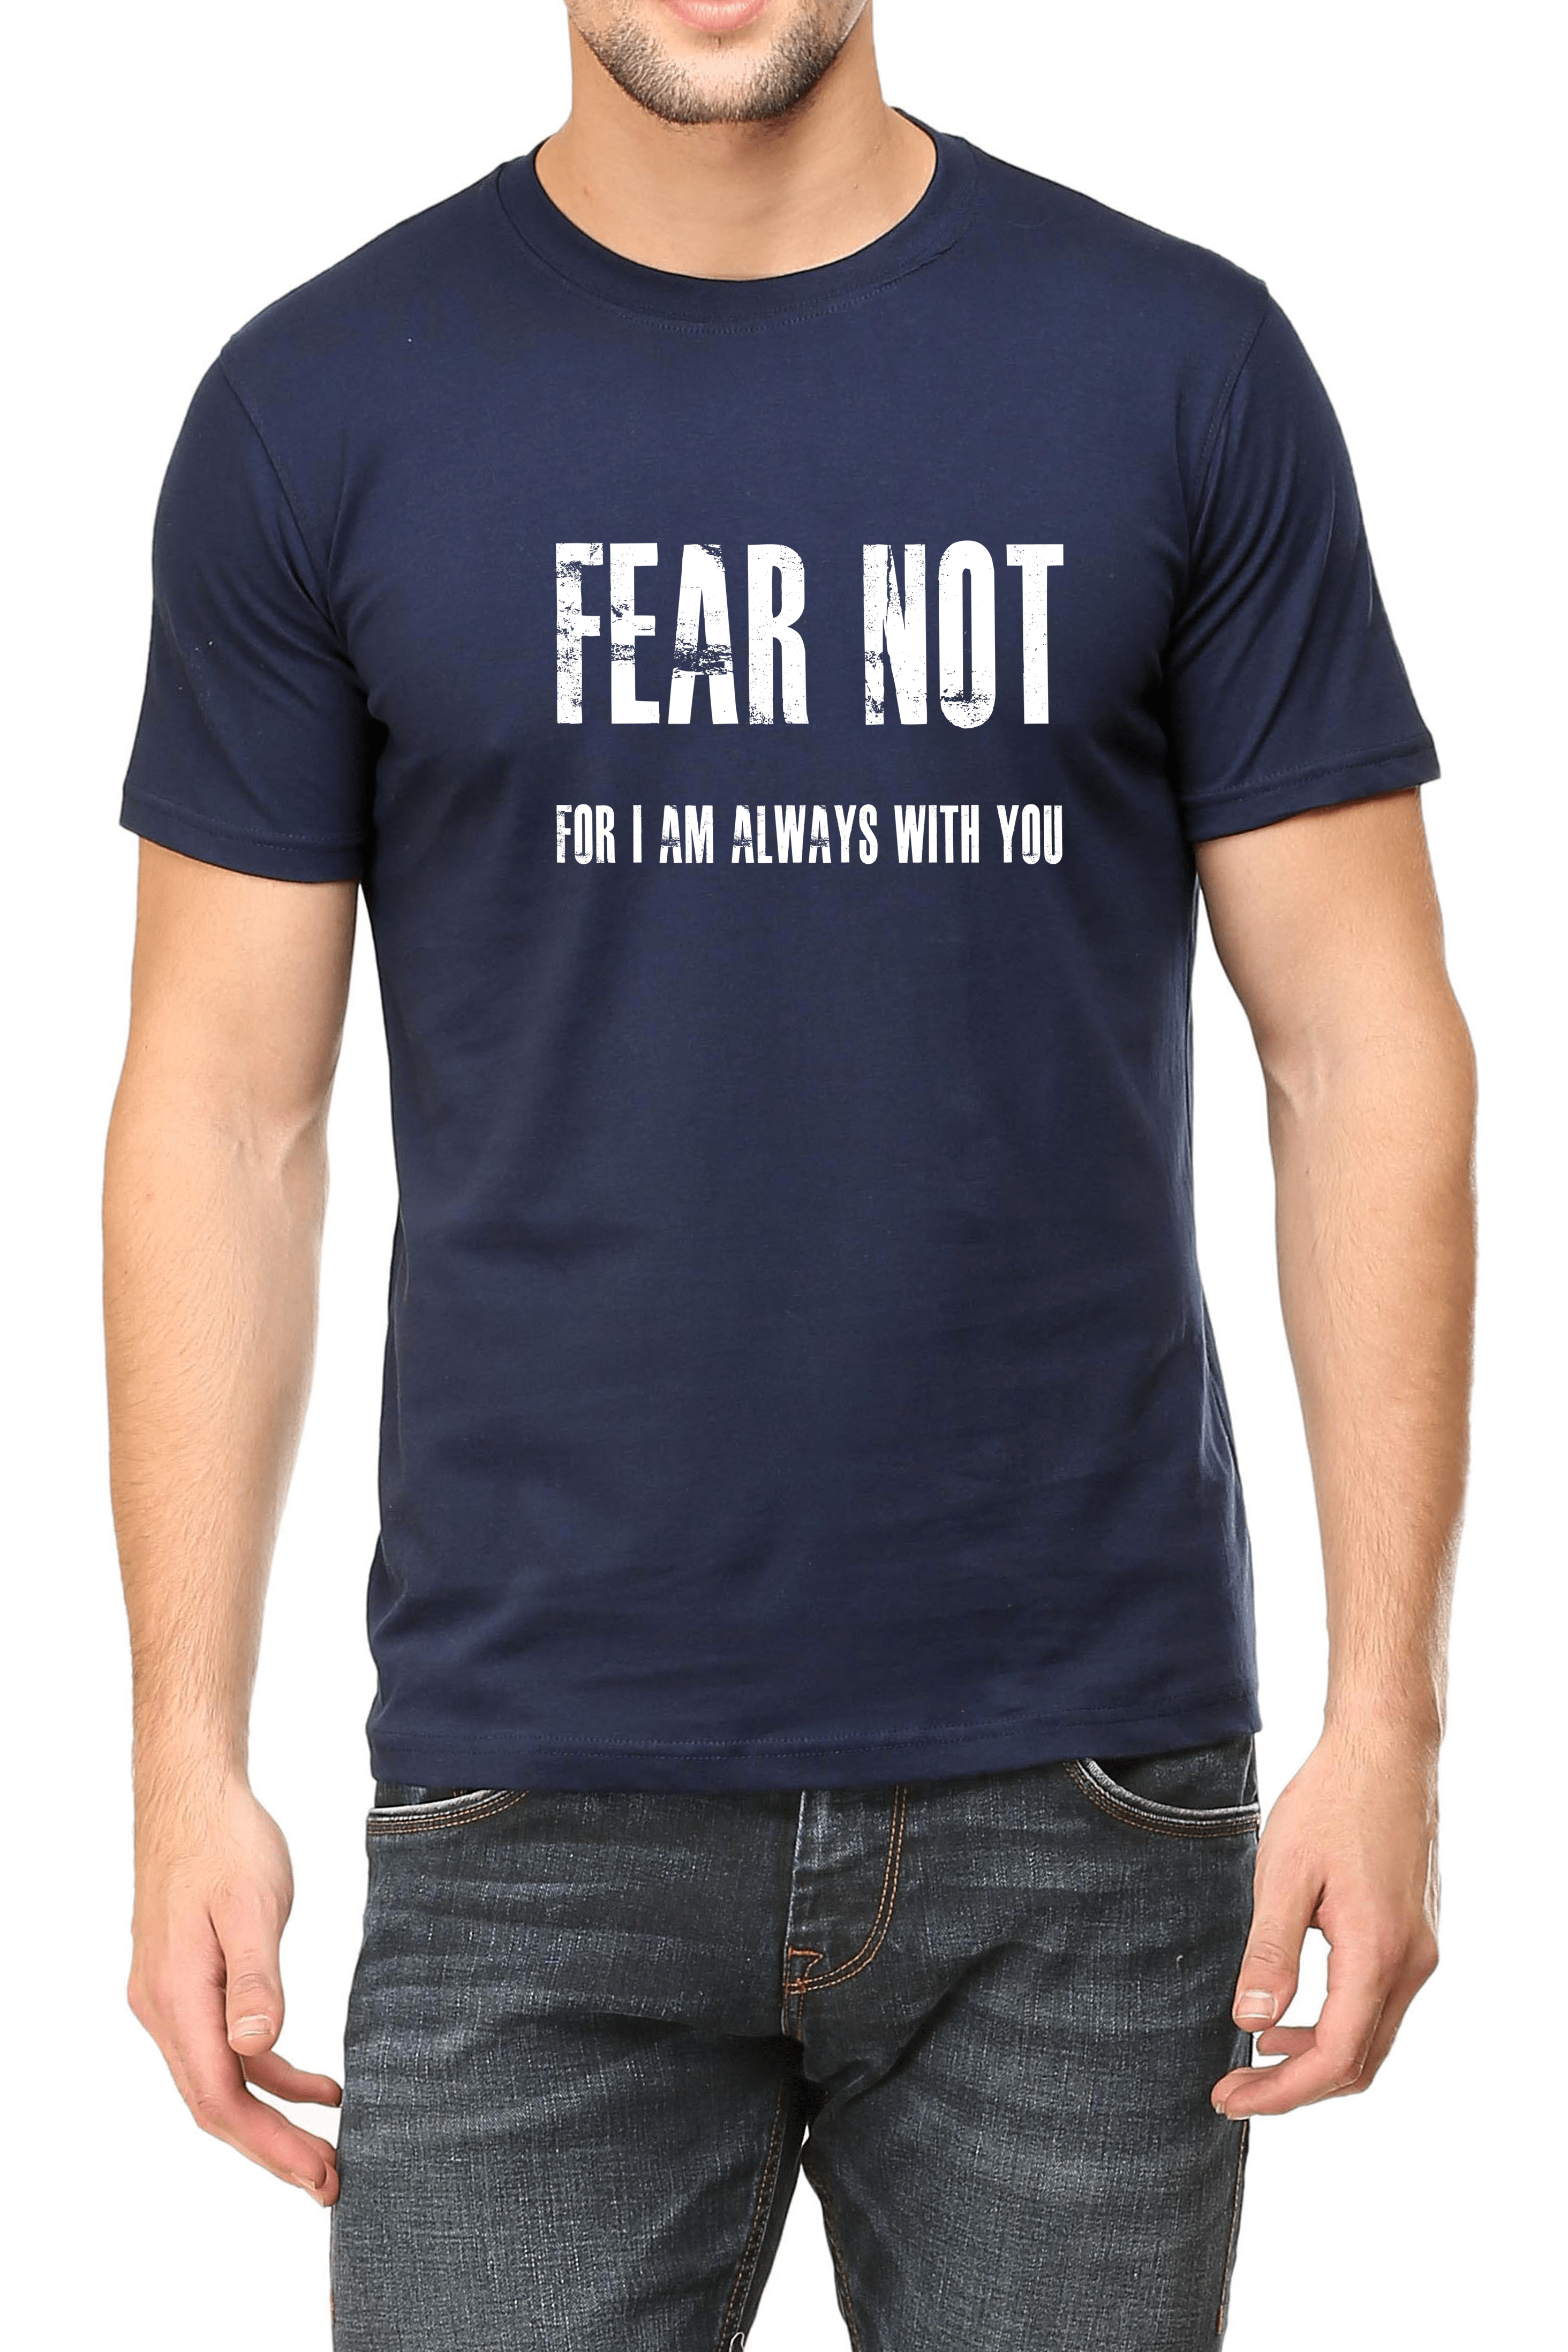 Living Words Men Round Neck T Shirt S / Navy Blue Fear Not - Christian T-Shirt